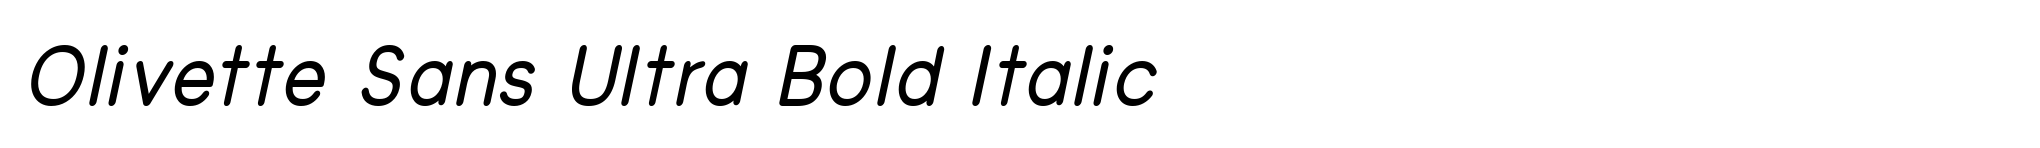 Olivette Sans Ultra Bold Italic image